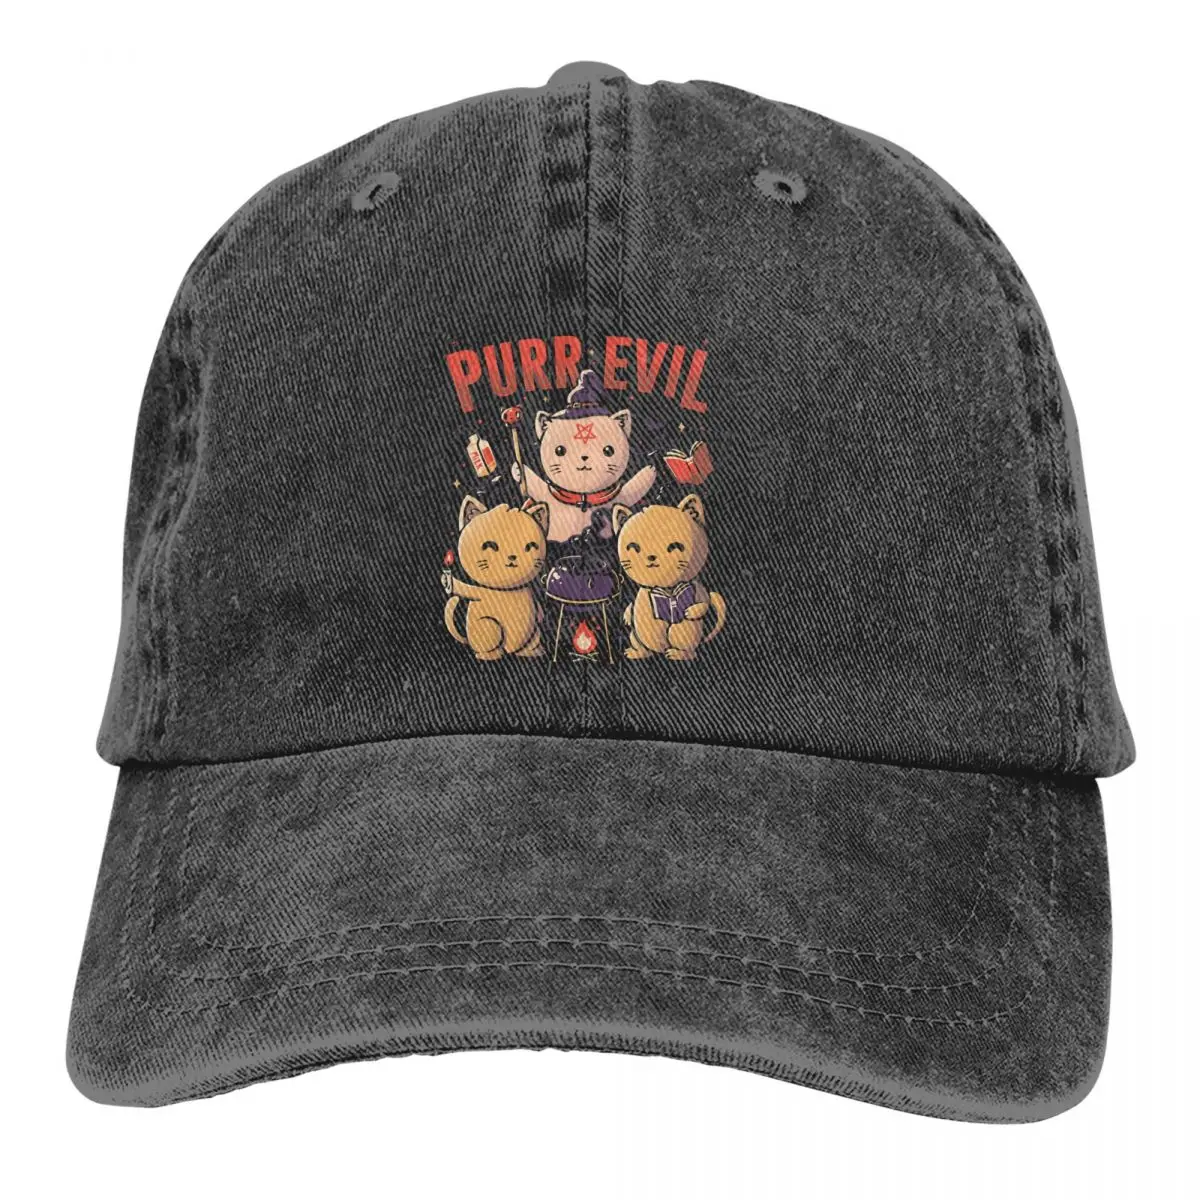 

Washed Men's Baseball Cap Purr Evil Trucker Snapback Caps Dad Hat Baphomet Satan Lucifer Golf Hats